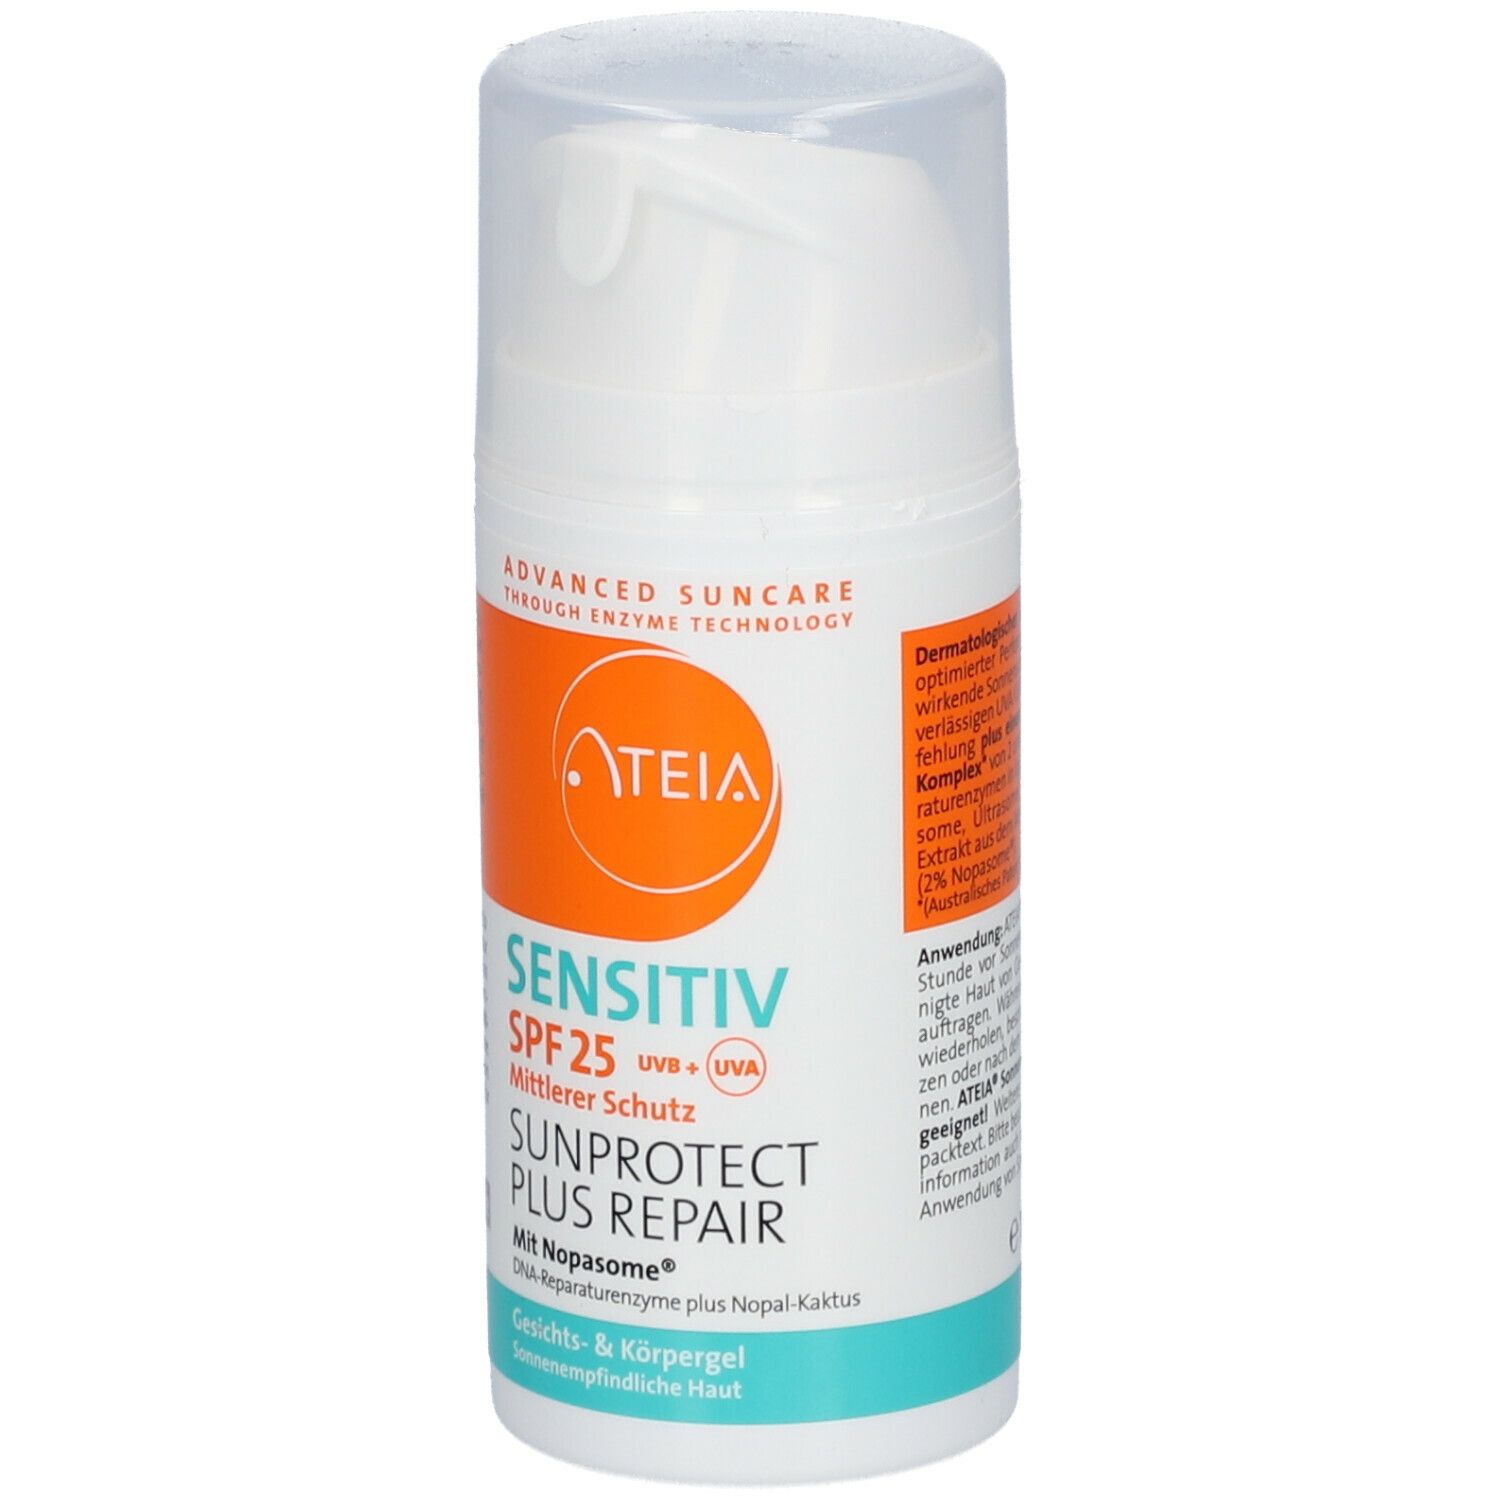 ATEIA® LSF 25 Sunprotect Plus Repair